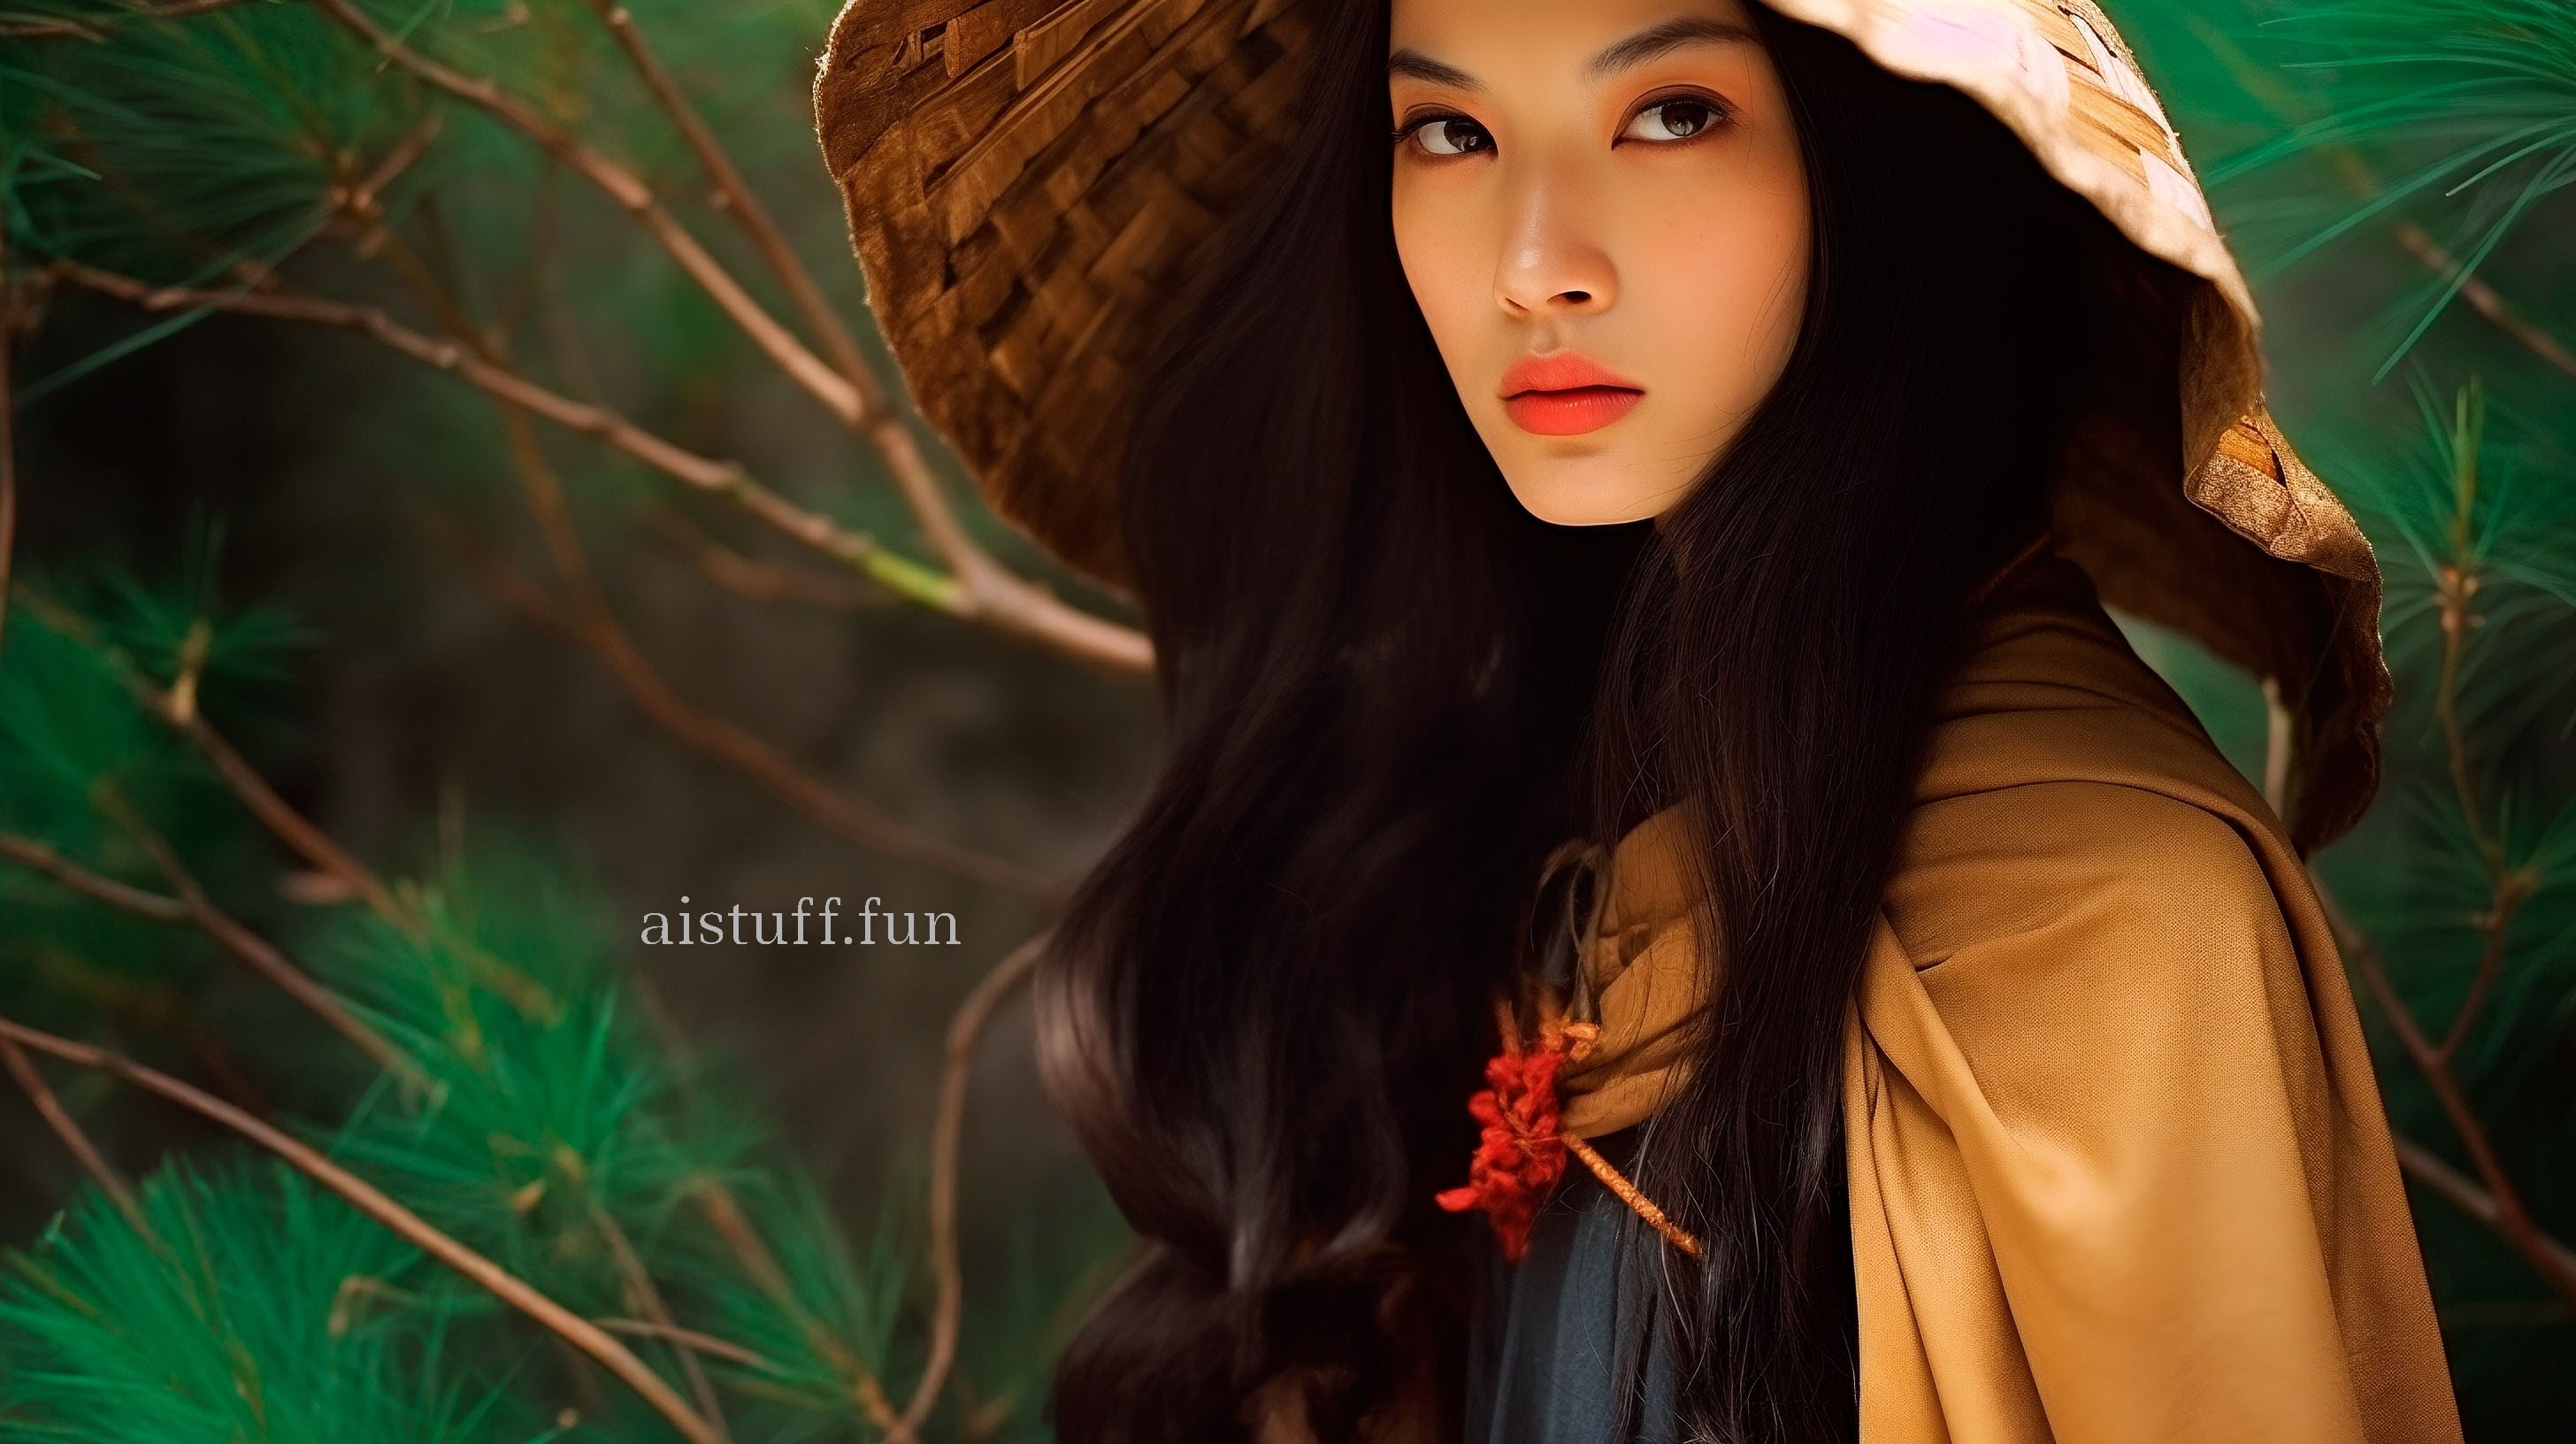 Beautiful Asian woman in a wicker hat in a coniferous forest